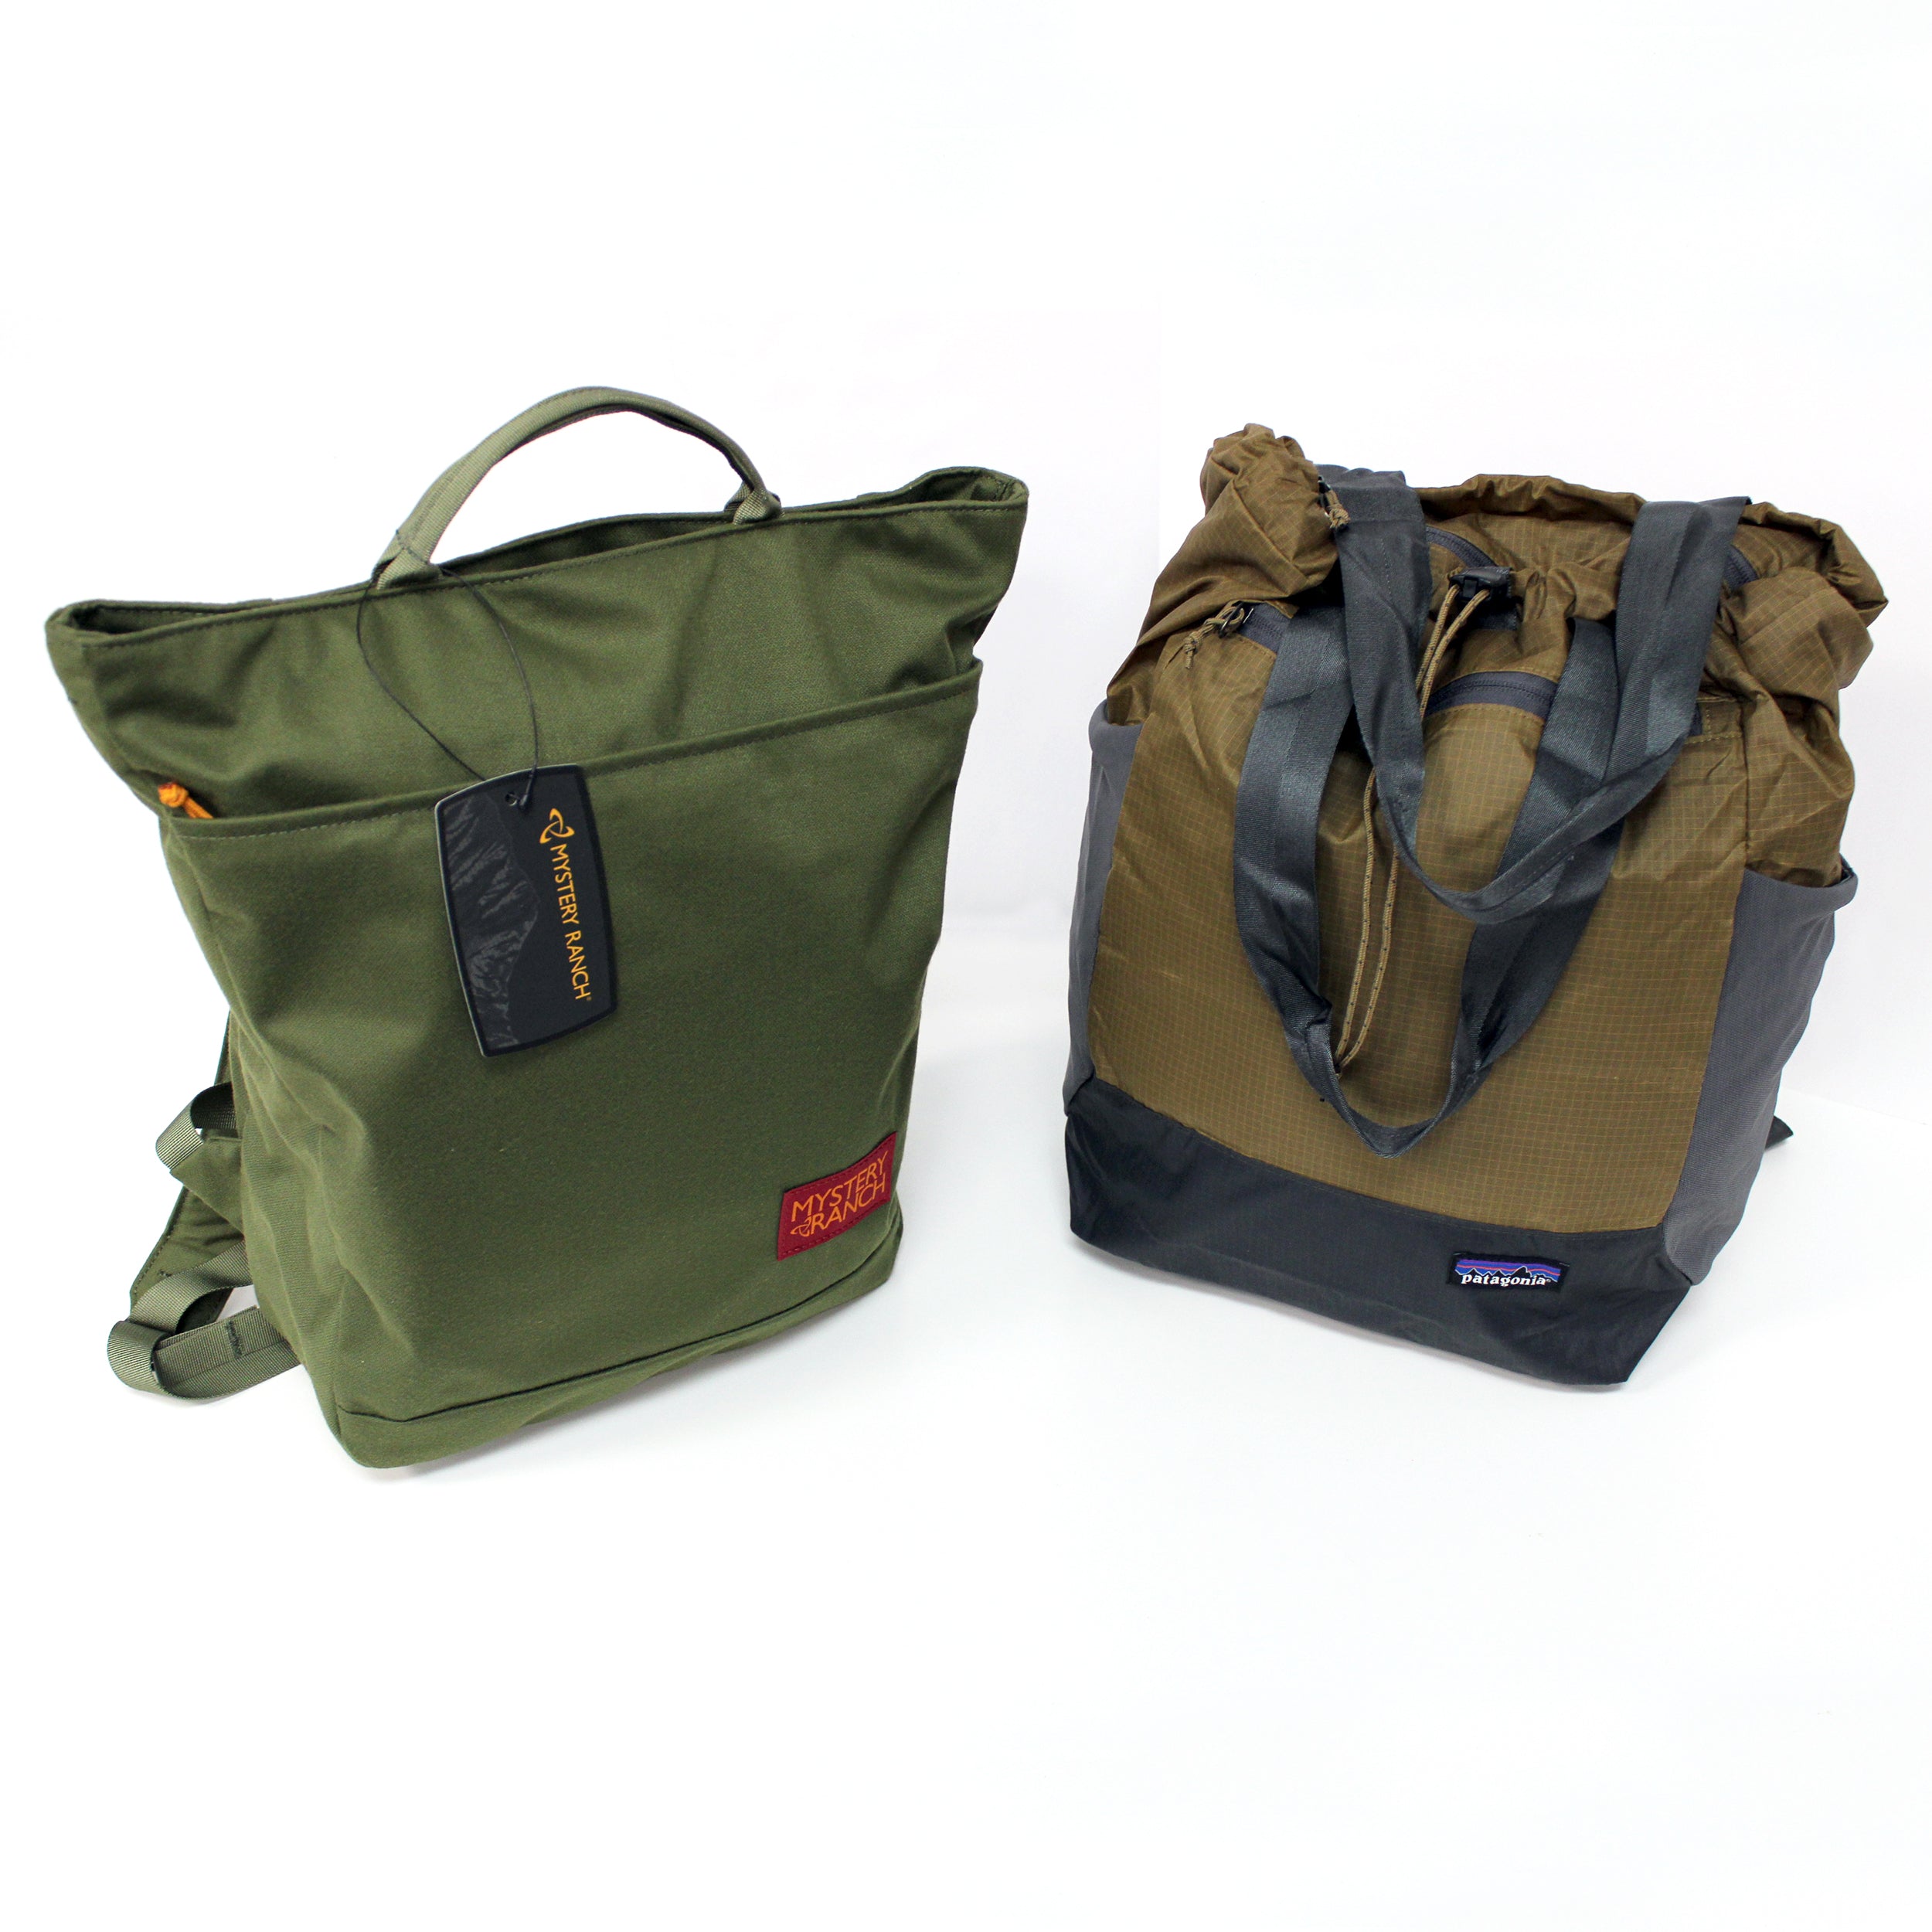 Market 18L Backpack/Tote